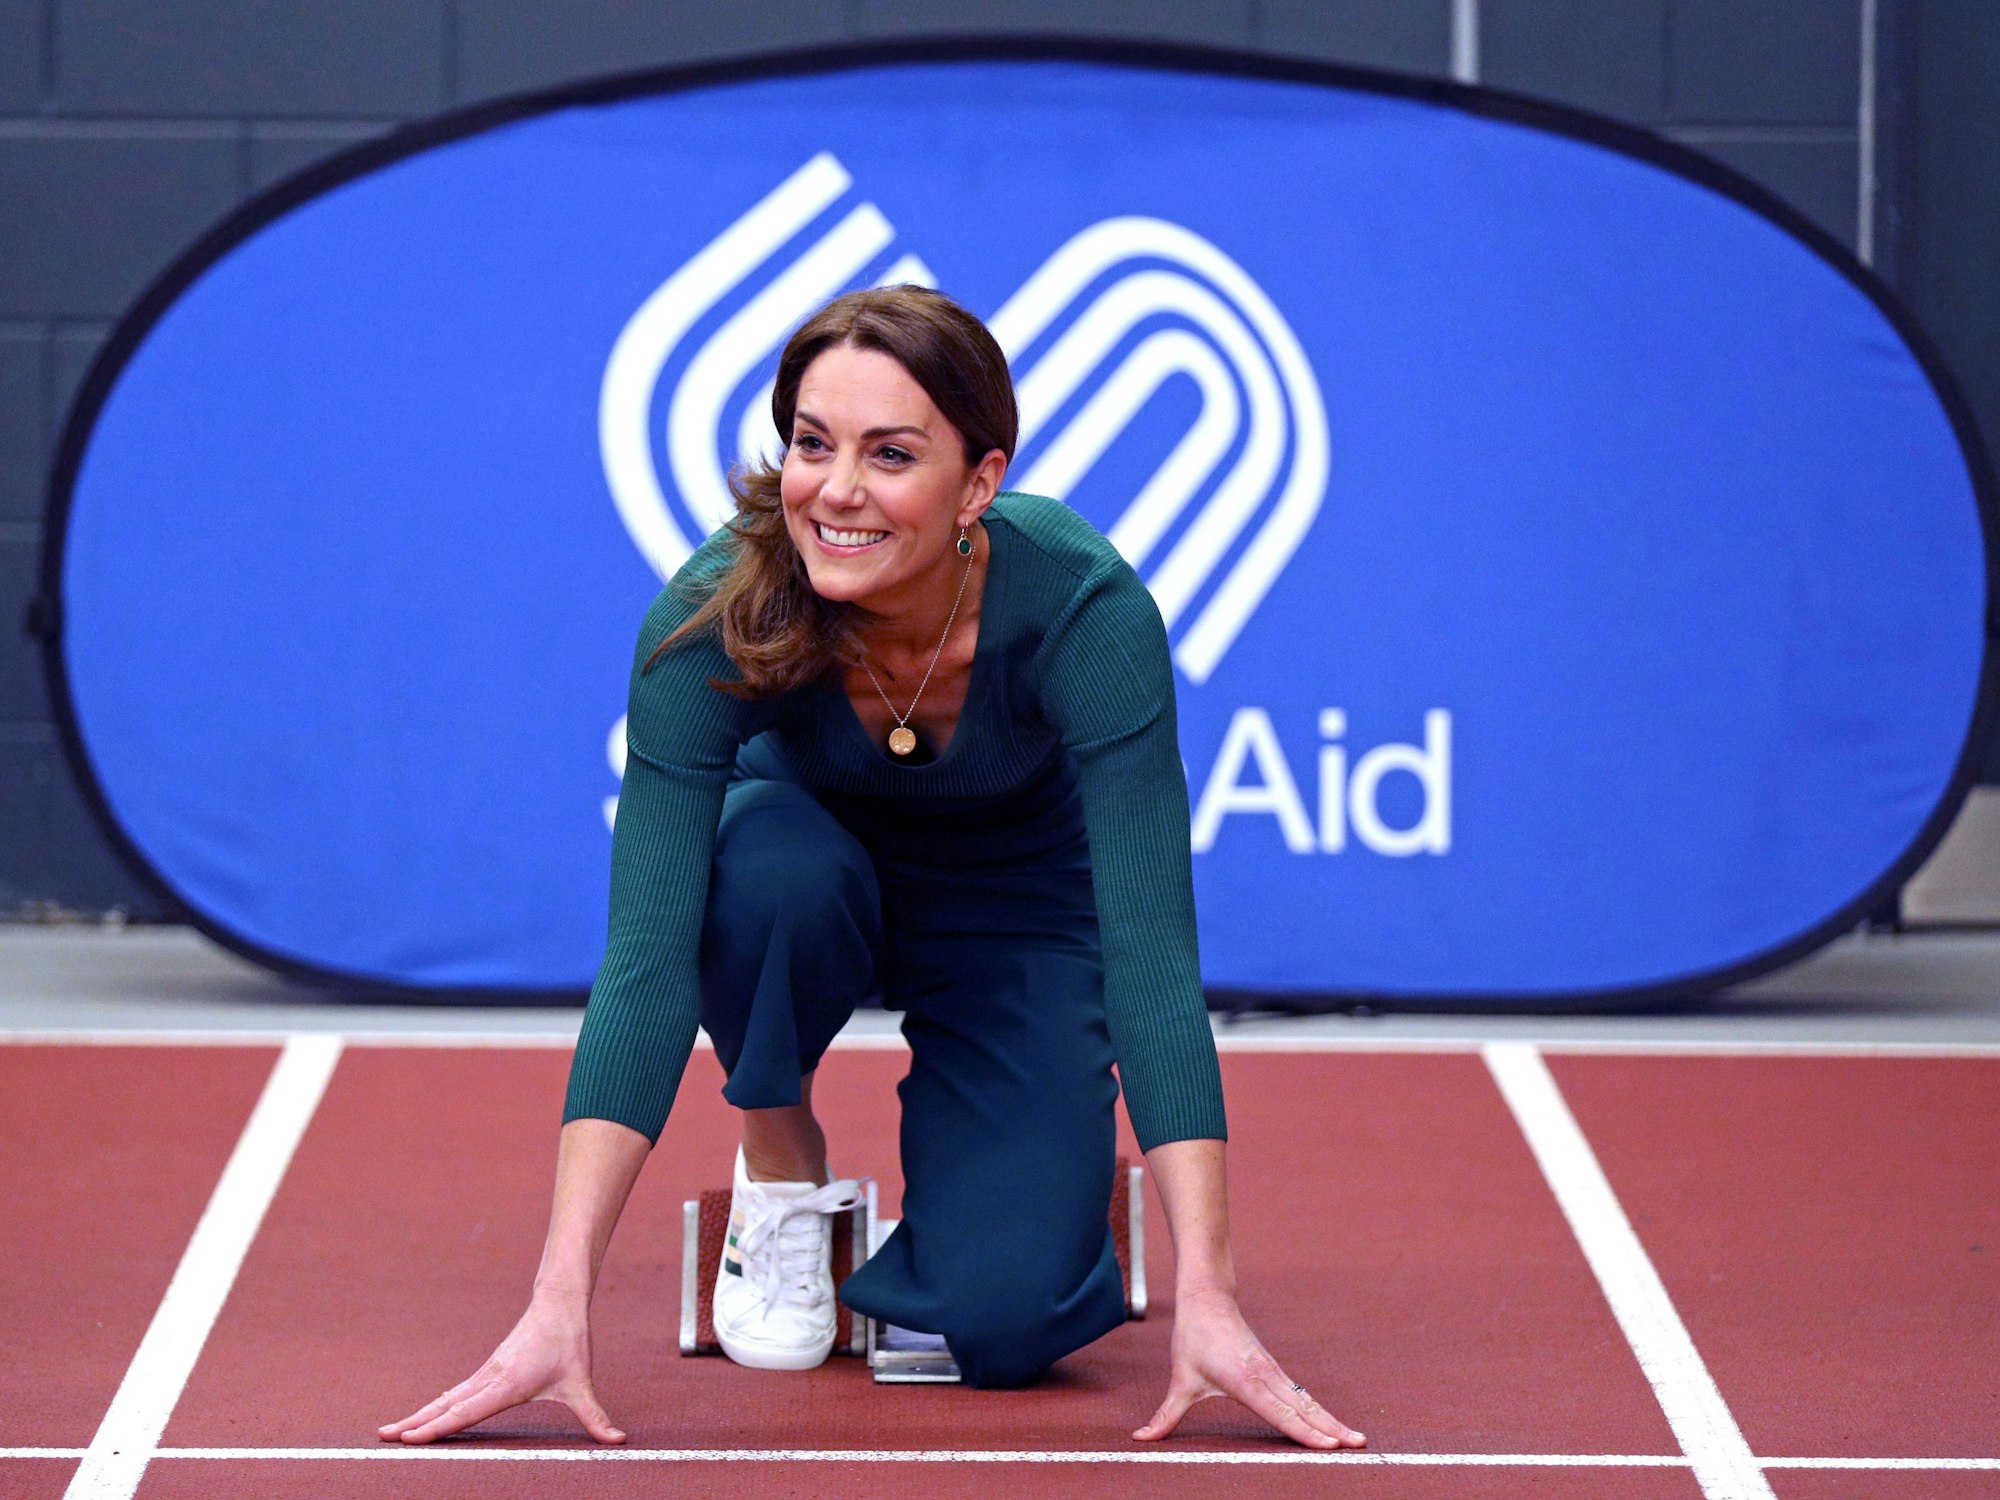 Kate, Herzogin von Cambridge, nimmt Aufstellung an einem Startblock auf einer Rennstrecke bei einer Sportveranstaltung 2020 im Olympiastadion.